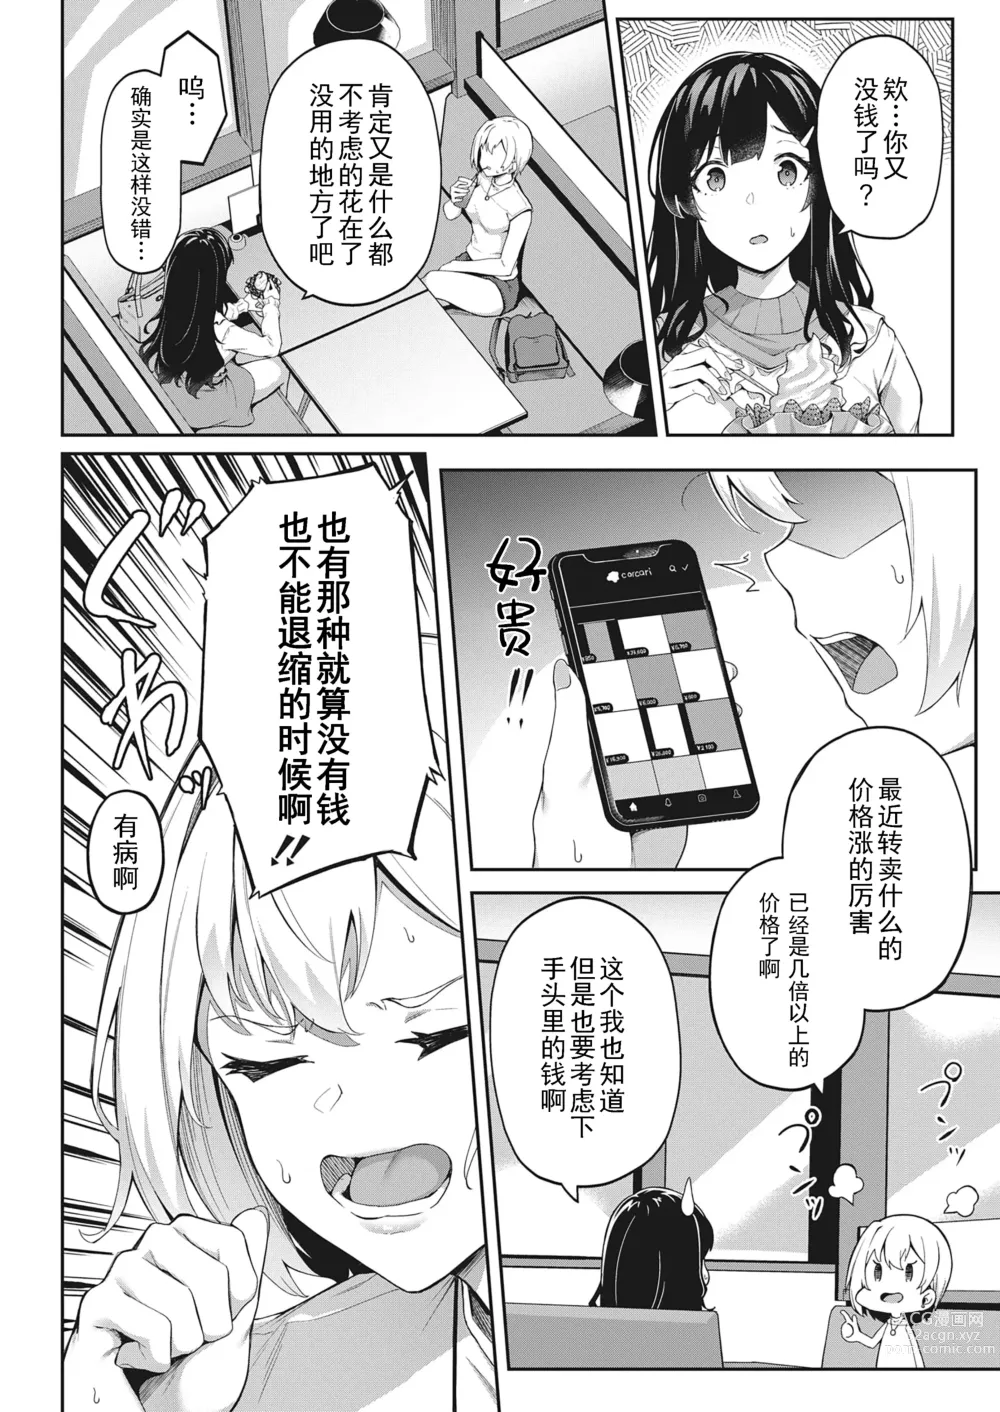 Page 2 of manga Kimi wa Ikasama o Shite iru